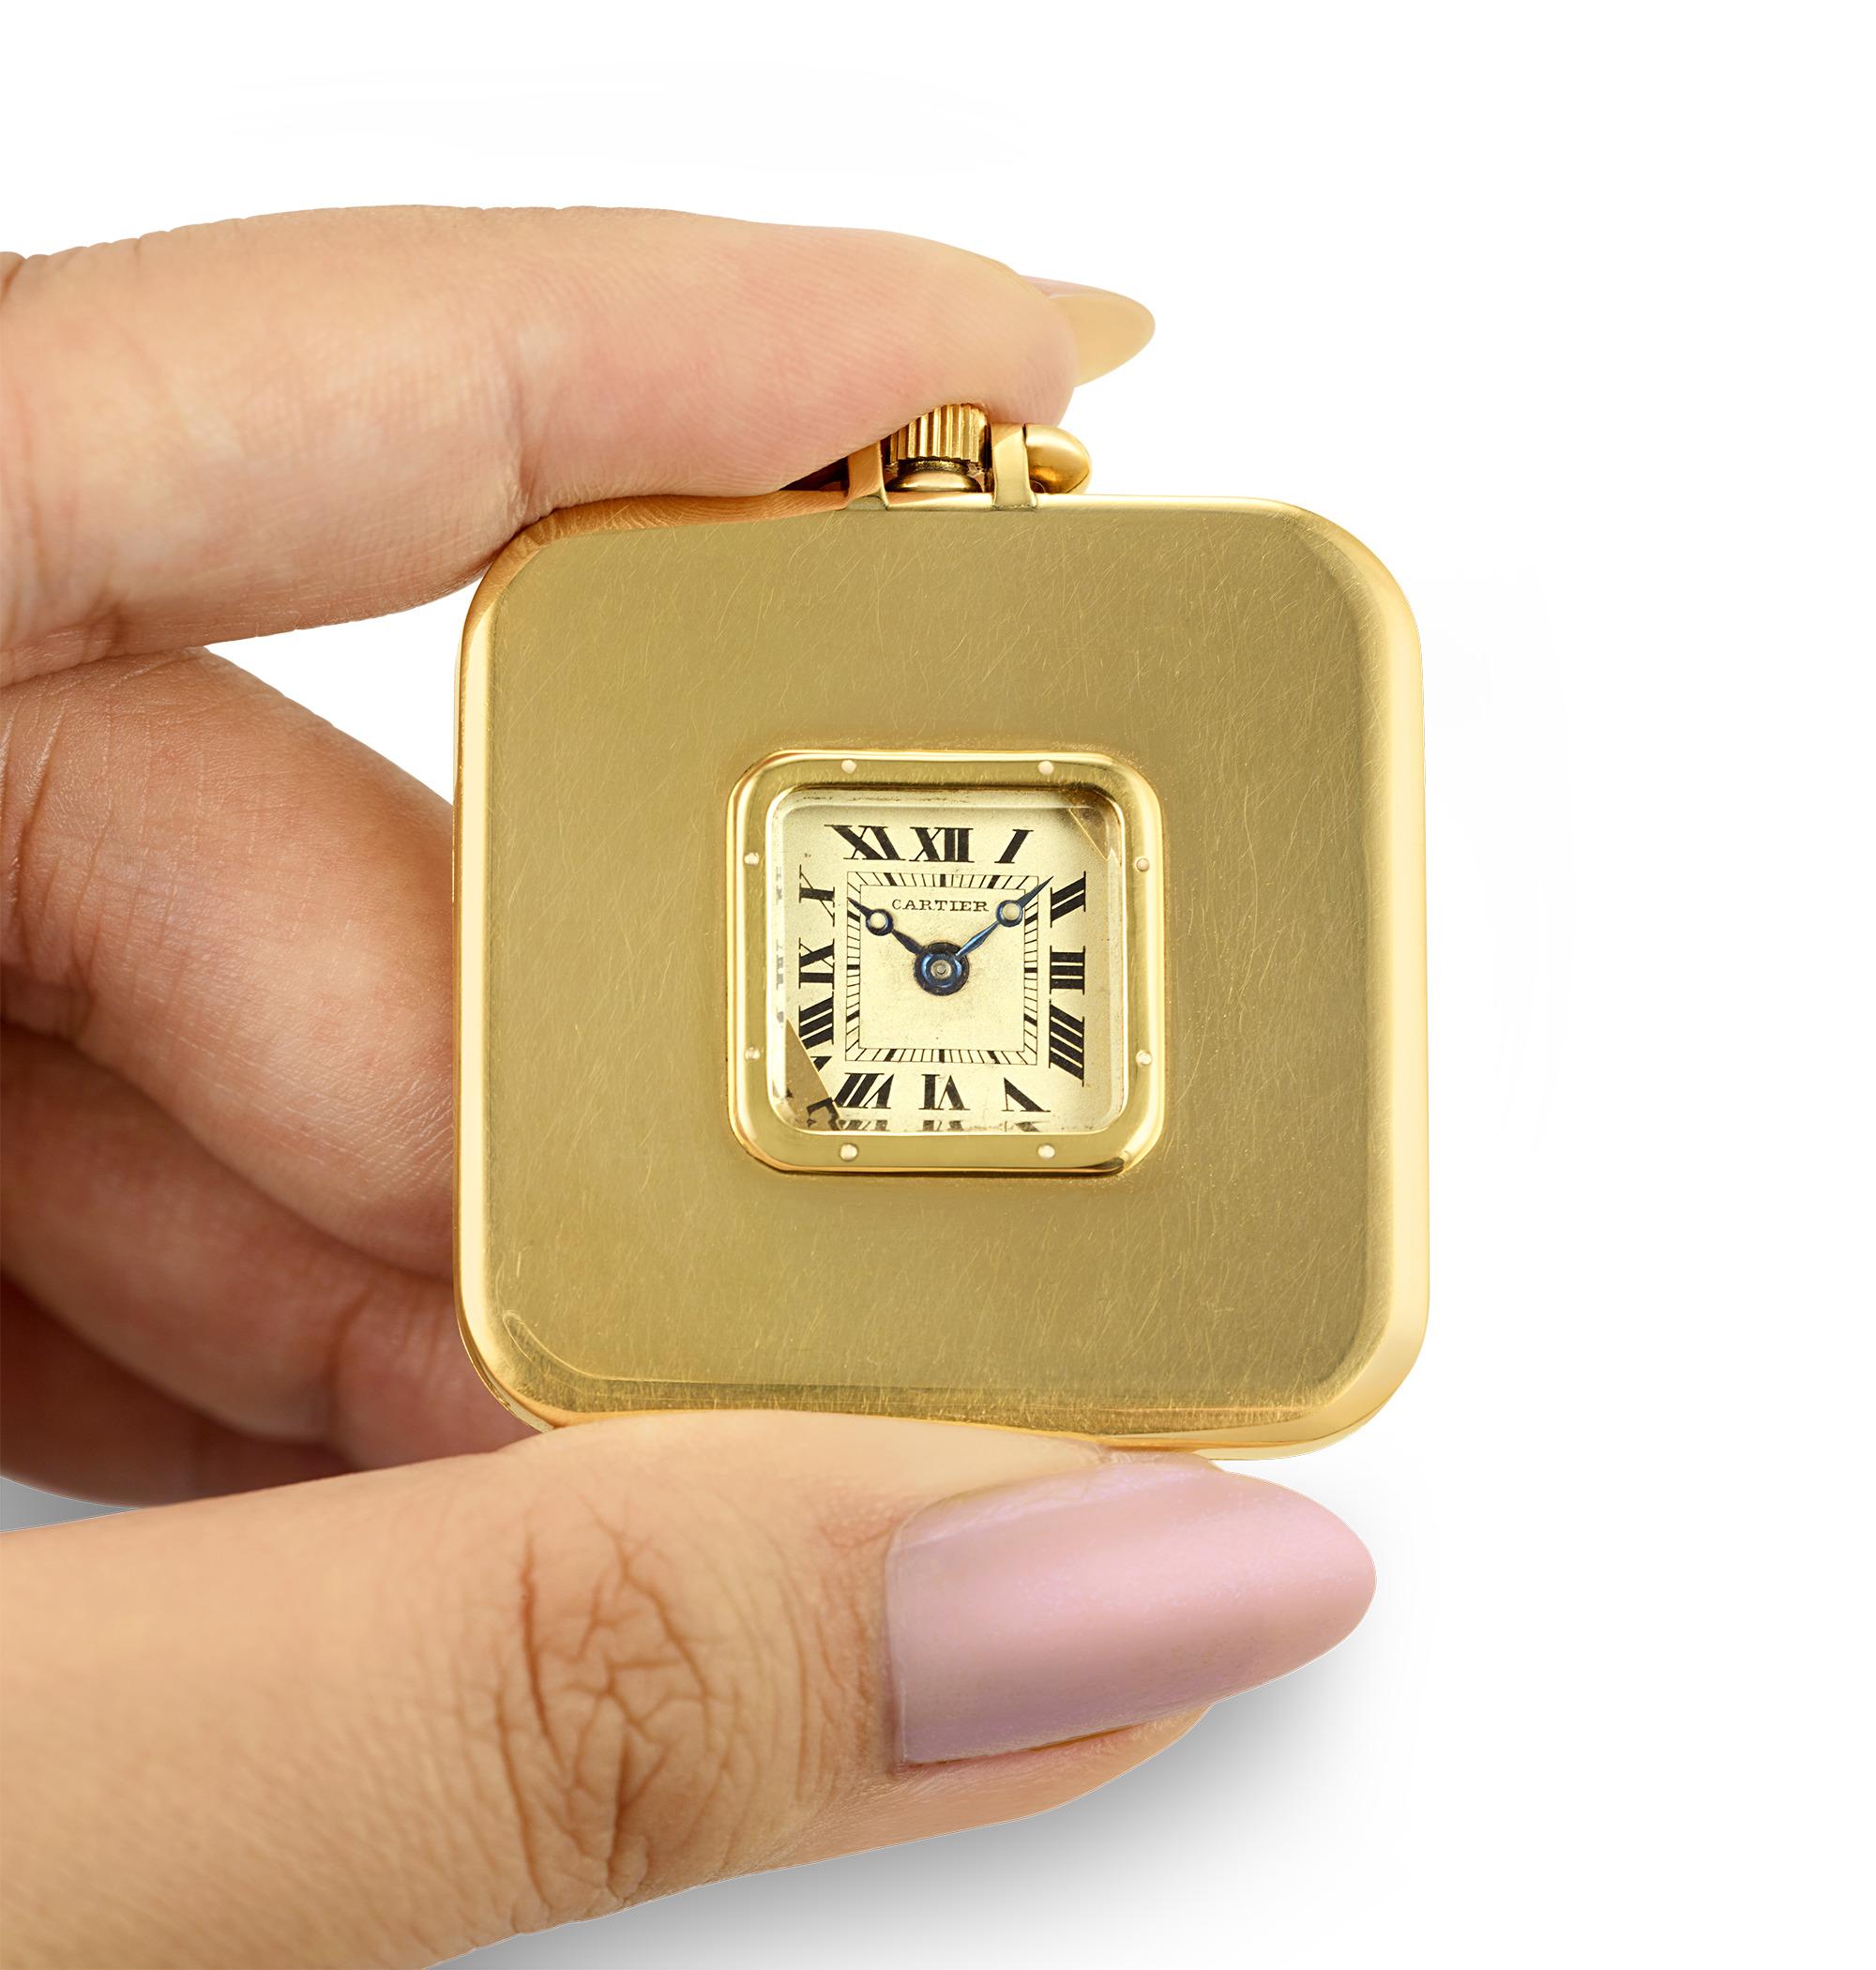 Cette montre de poche Art déco a été fabriquée par la célèbre maison Cartier. Logé dans un boîtier en or 18 carats, ce garde-temps à la forme carrée affiche un design épuré. Le cadran de la montre, que l'on découvre en appuyant sur le bouton situé à